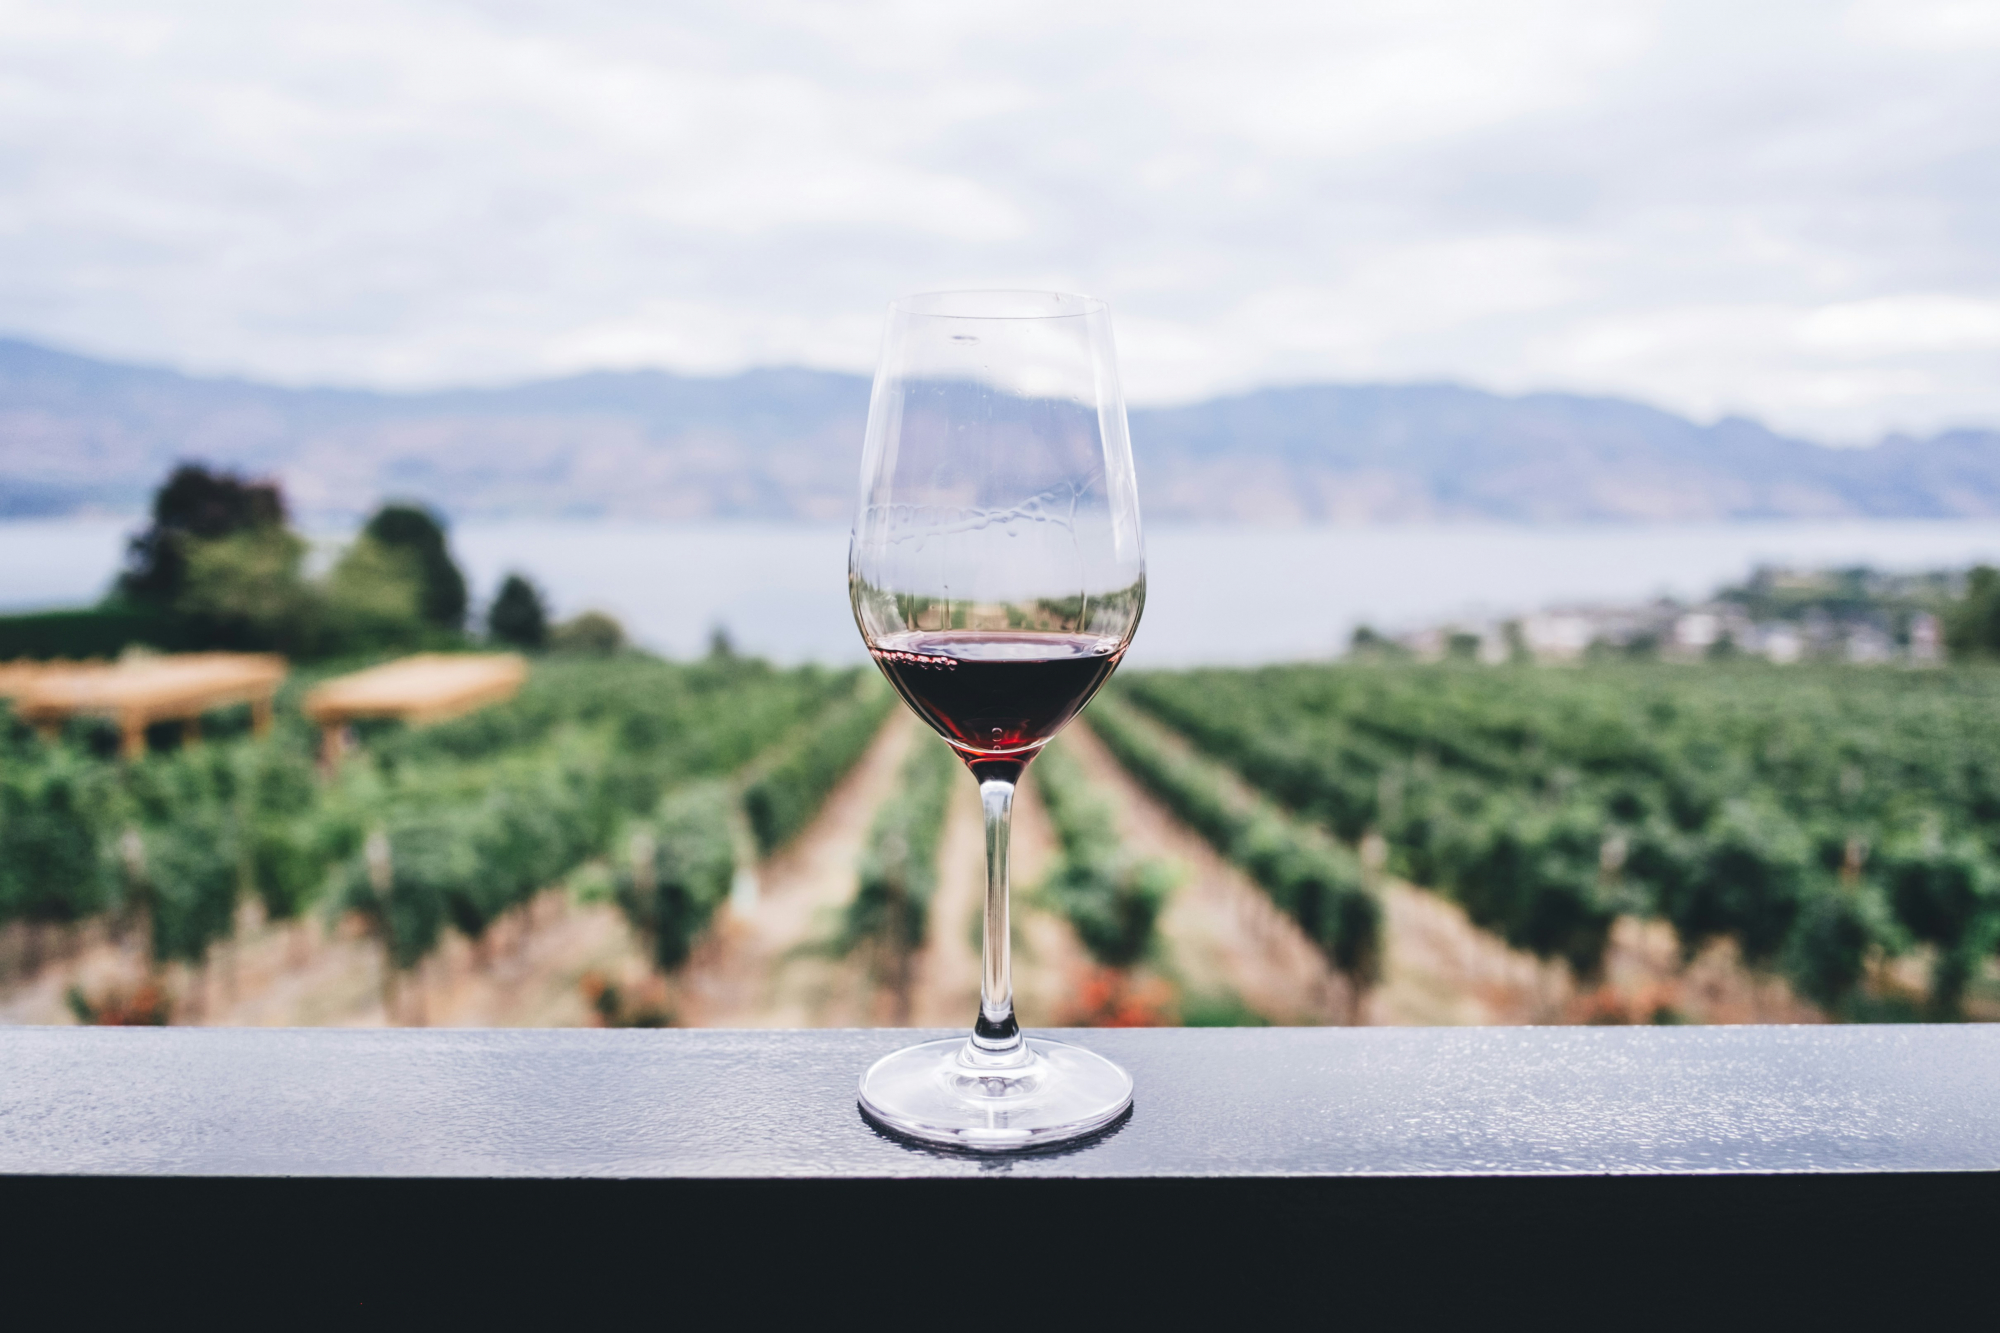 découvrez une sélection de vins rouges de qualité supérieure pour accompagner vos repas et célébrations. trouvez le parfait équilibre entre finesse et caractère dans notre gamme de vins rouges.